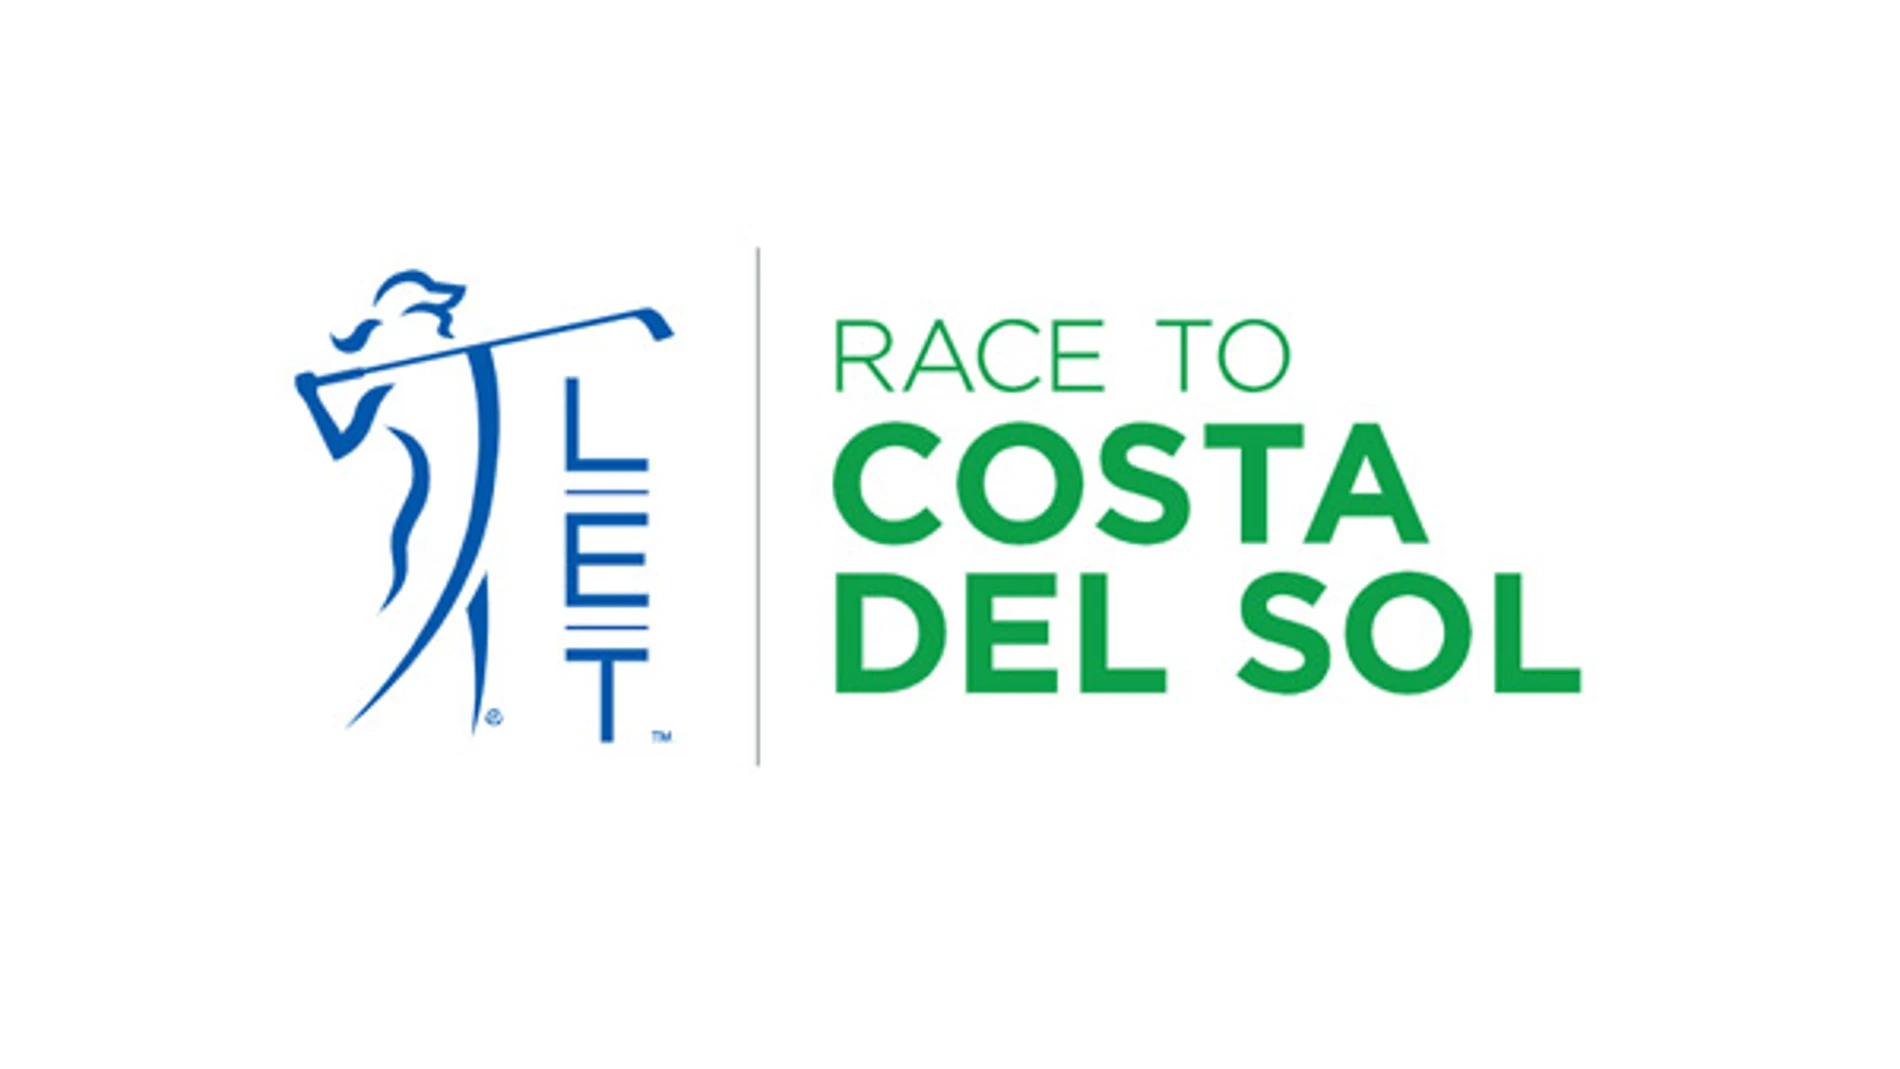 Nuevo logo Race to Costa del Sol.